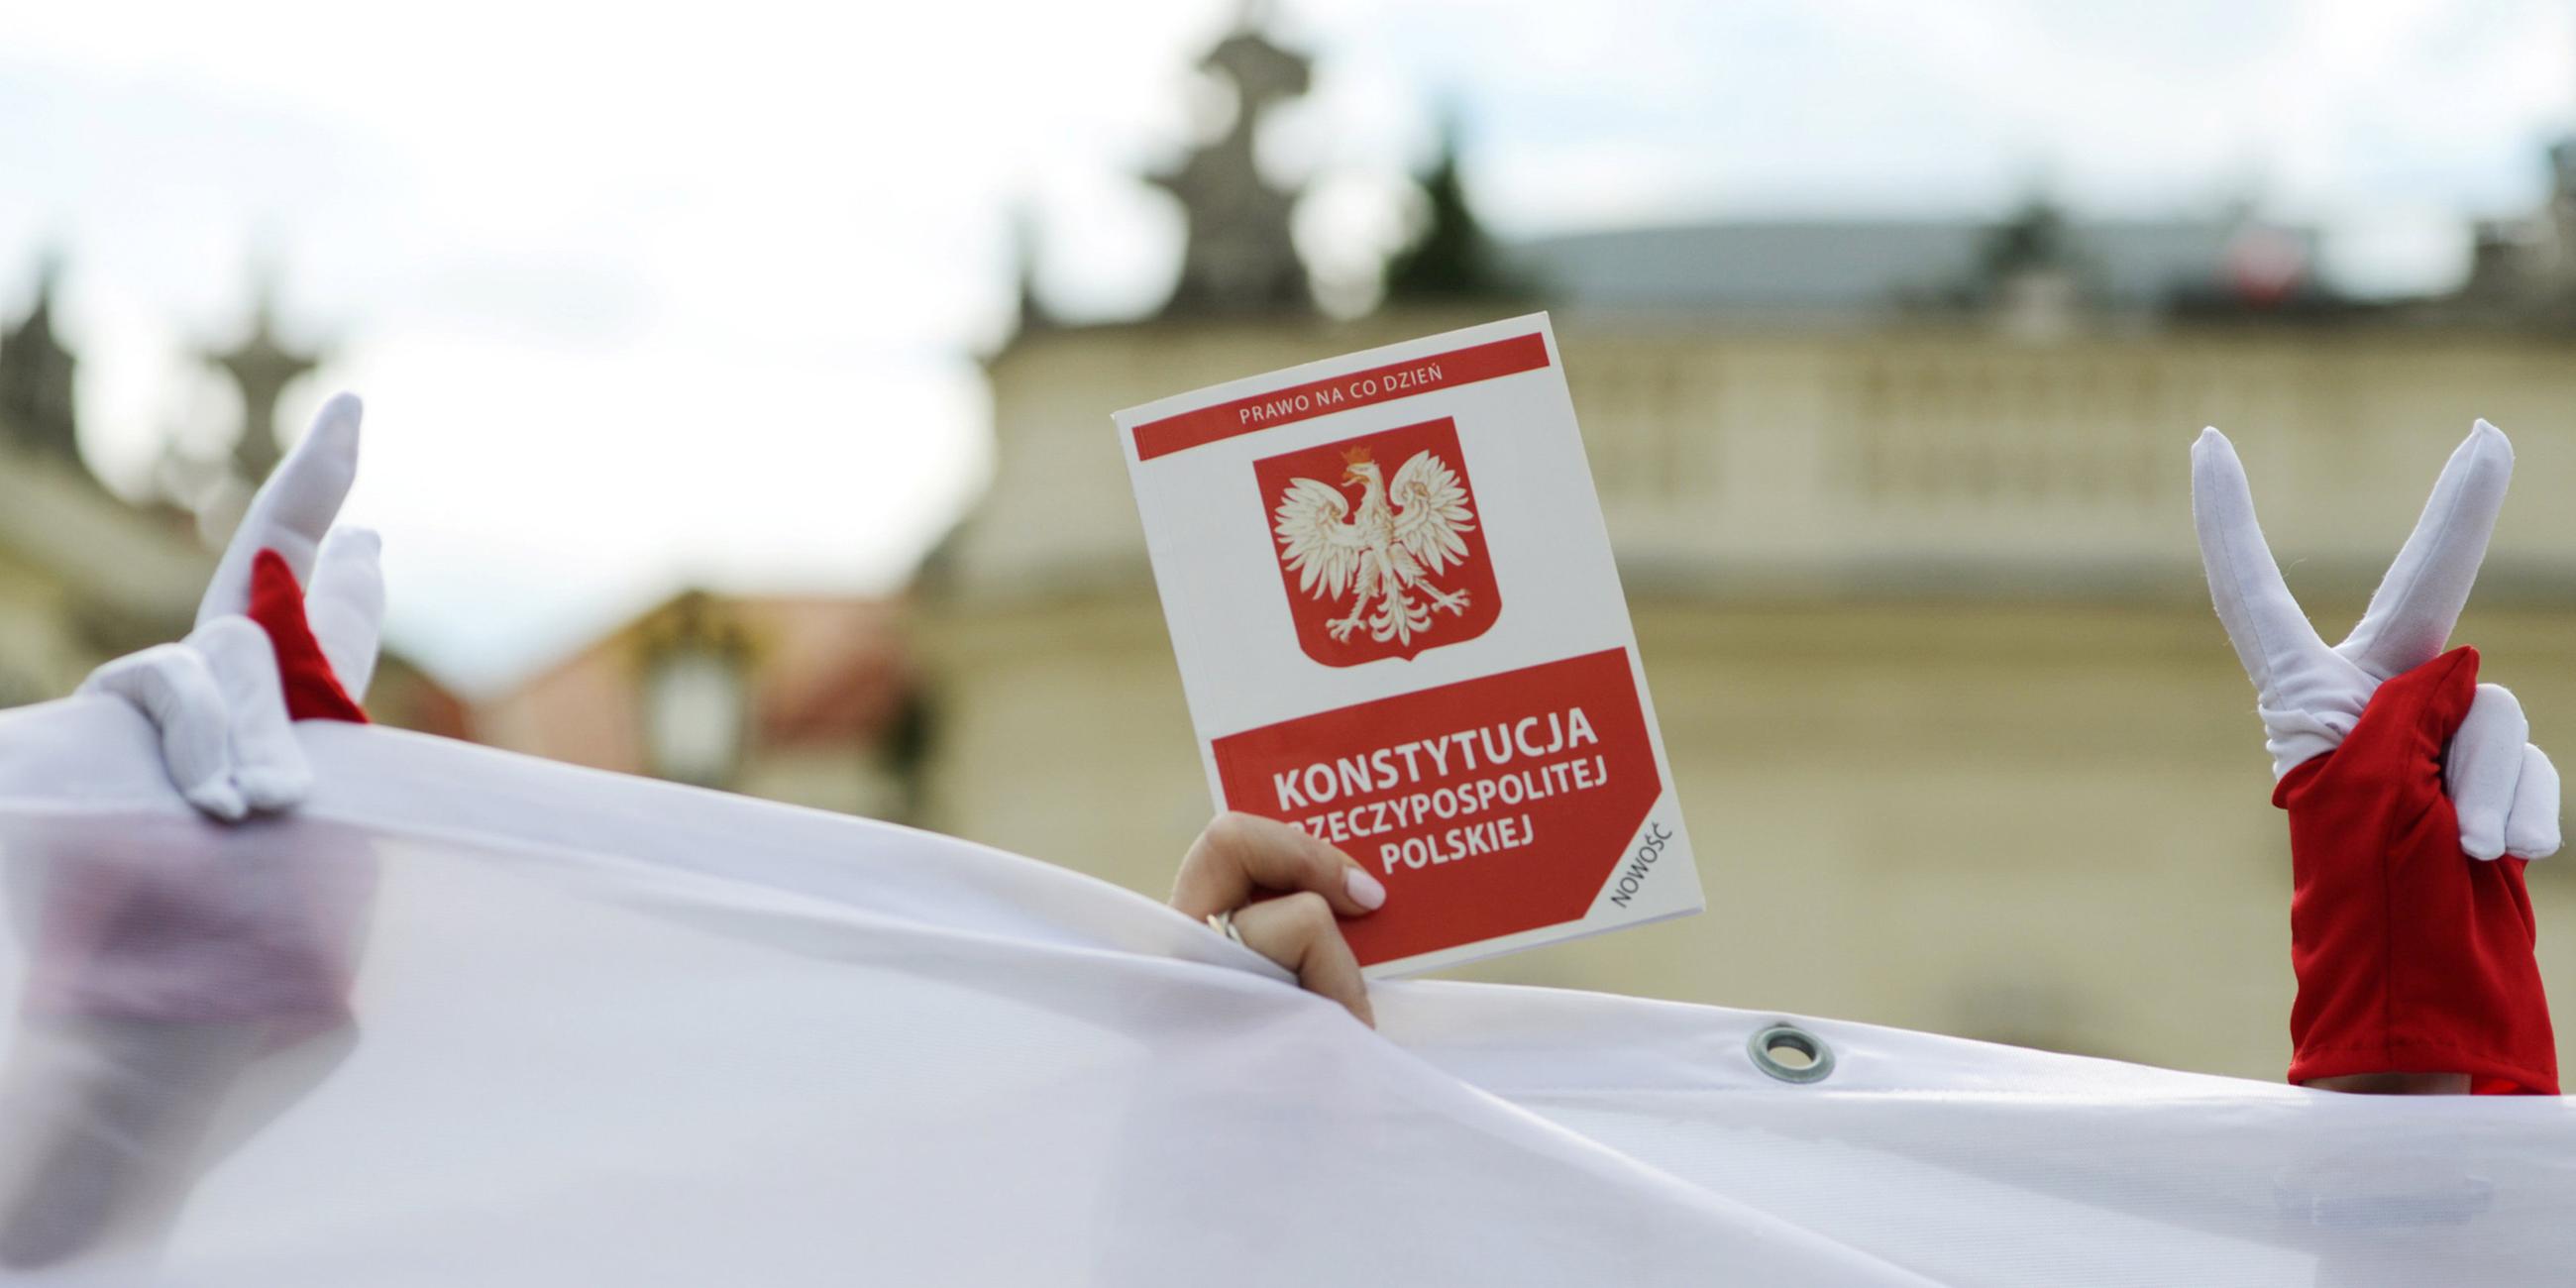 Archiv: Ein Demonstrant hält eine Kopie der polnischen Verfassung während eines Protestes gegen die Justizreform vor dem Präsidentenpalast in Warschau, Polen